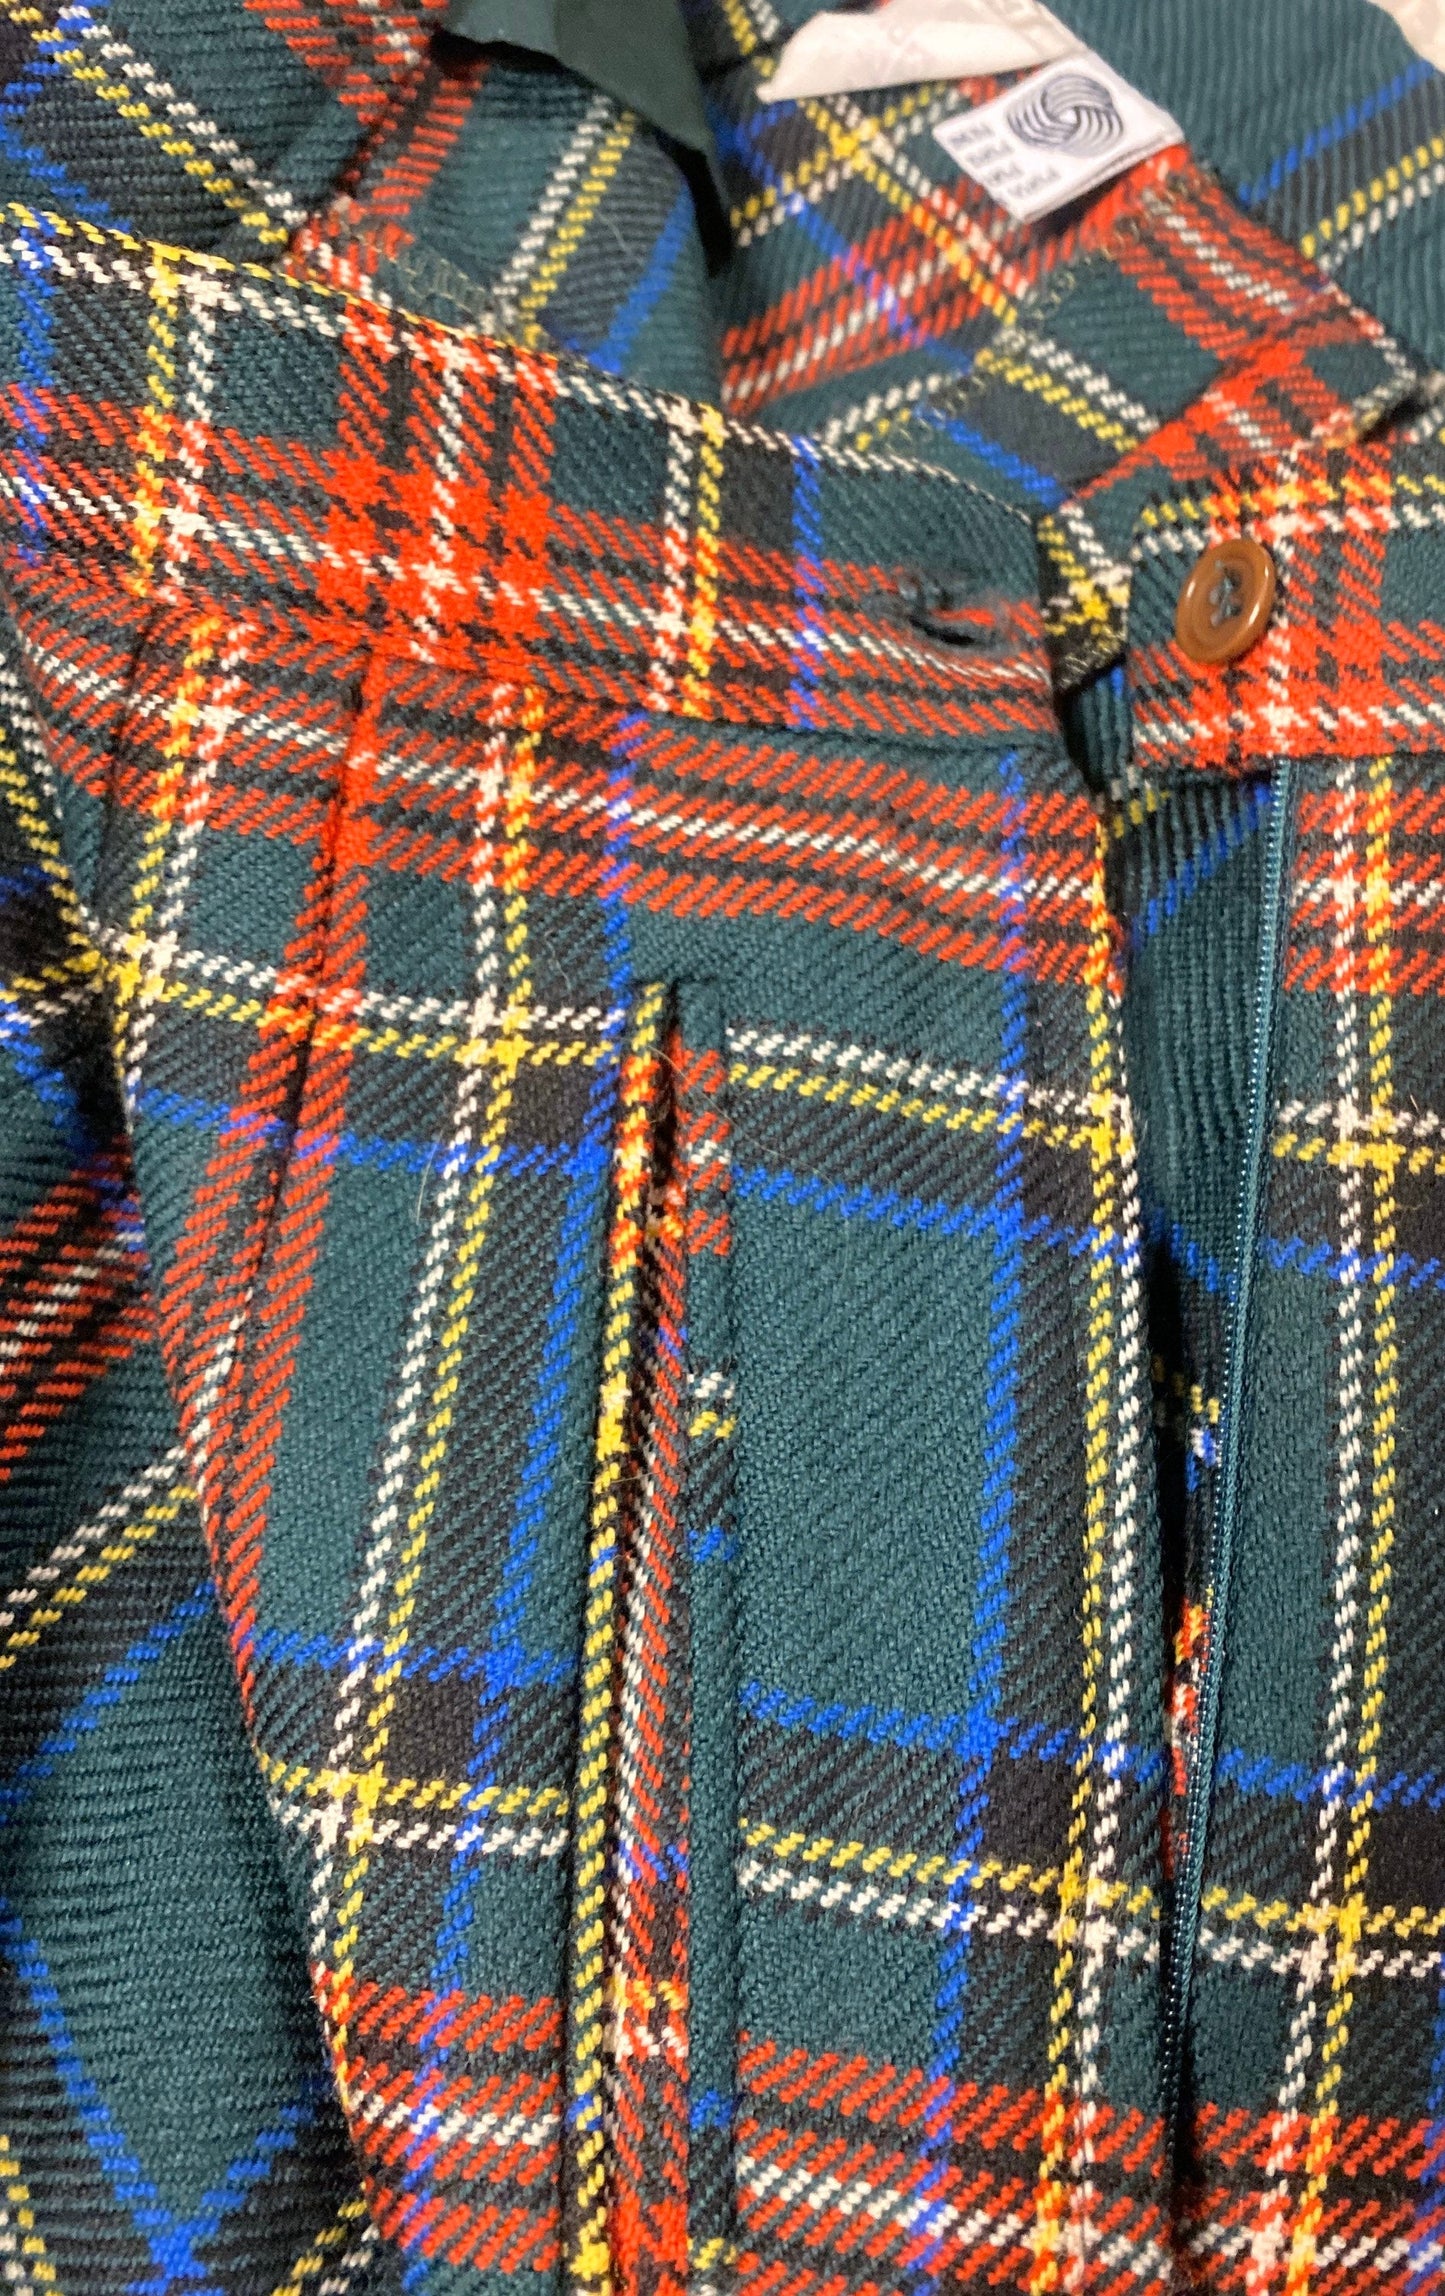 SM classic green/red tartan pure new wool ladies trousers size IT46  US 12/14 l, mint